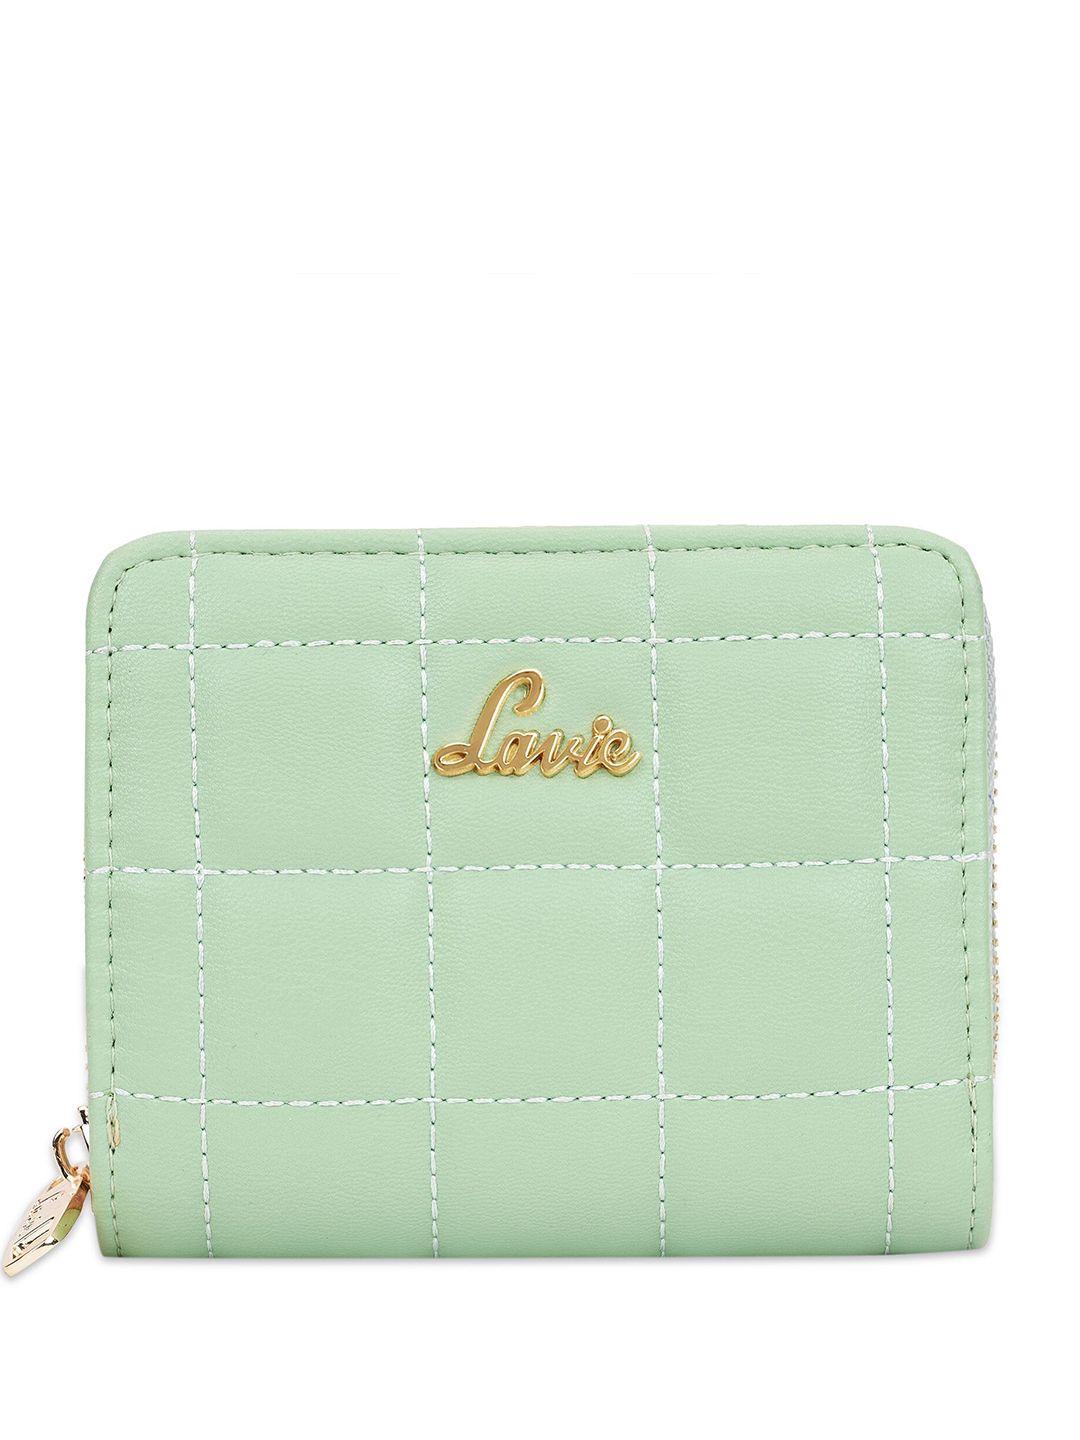 lavie-textured-zip-around-wallet